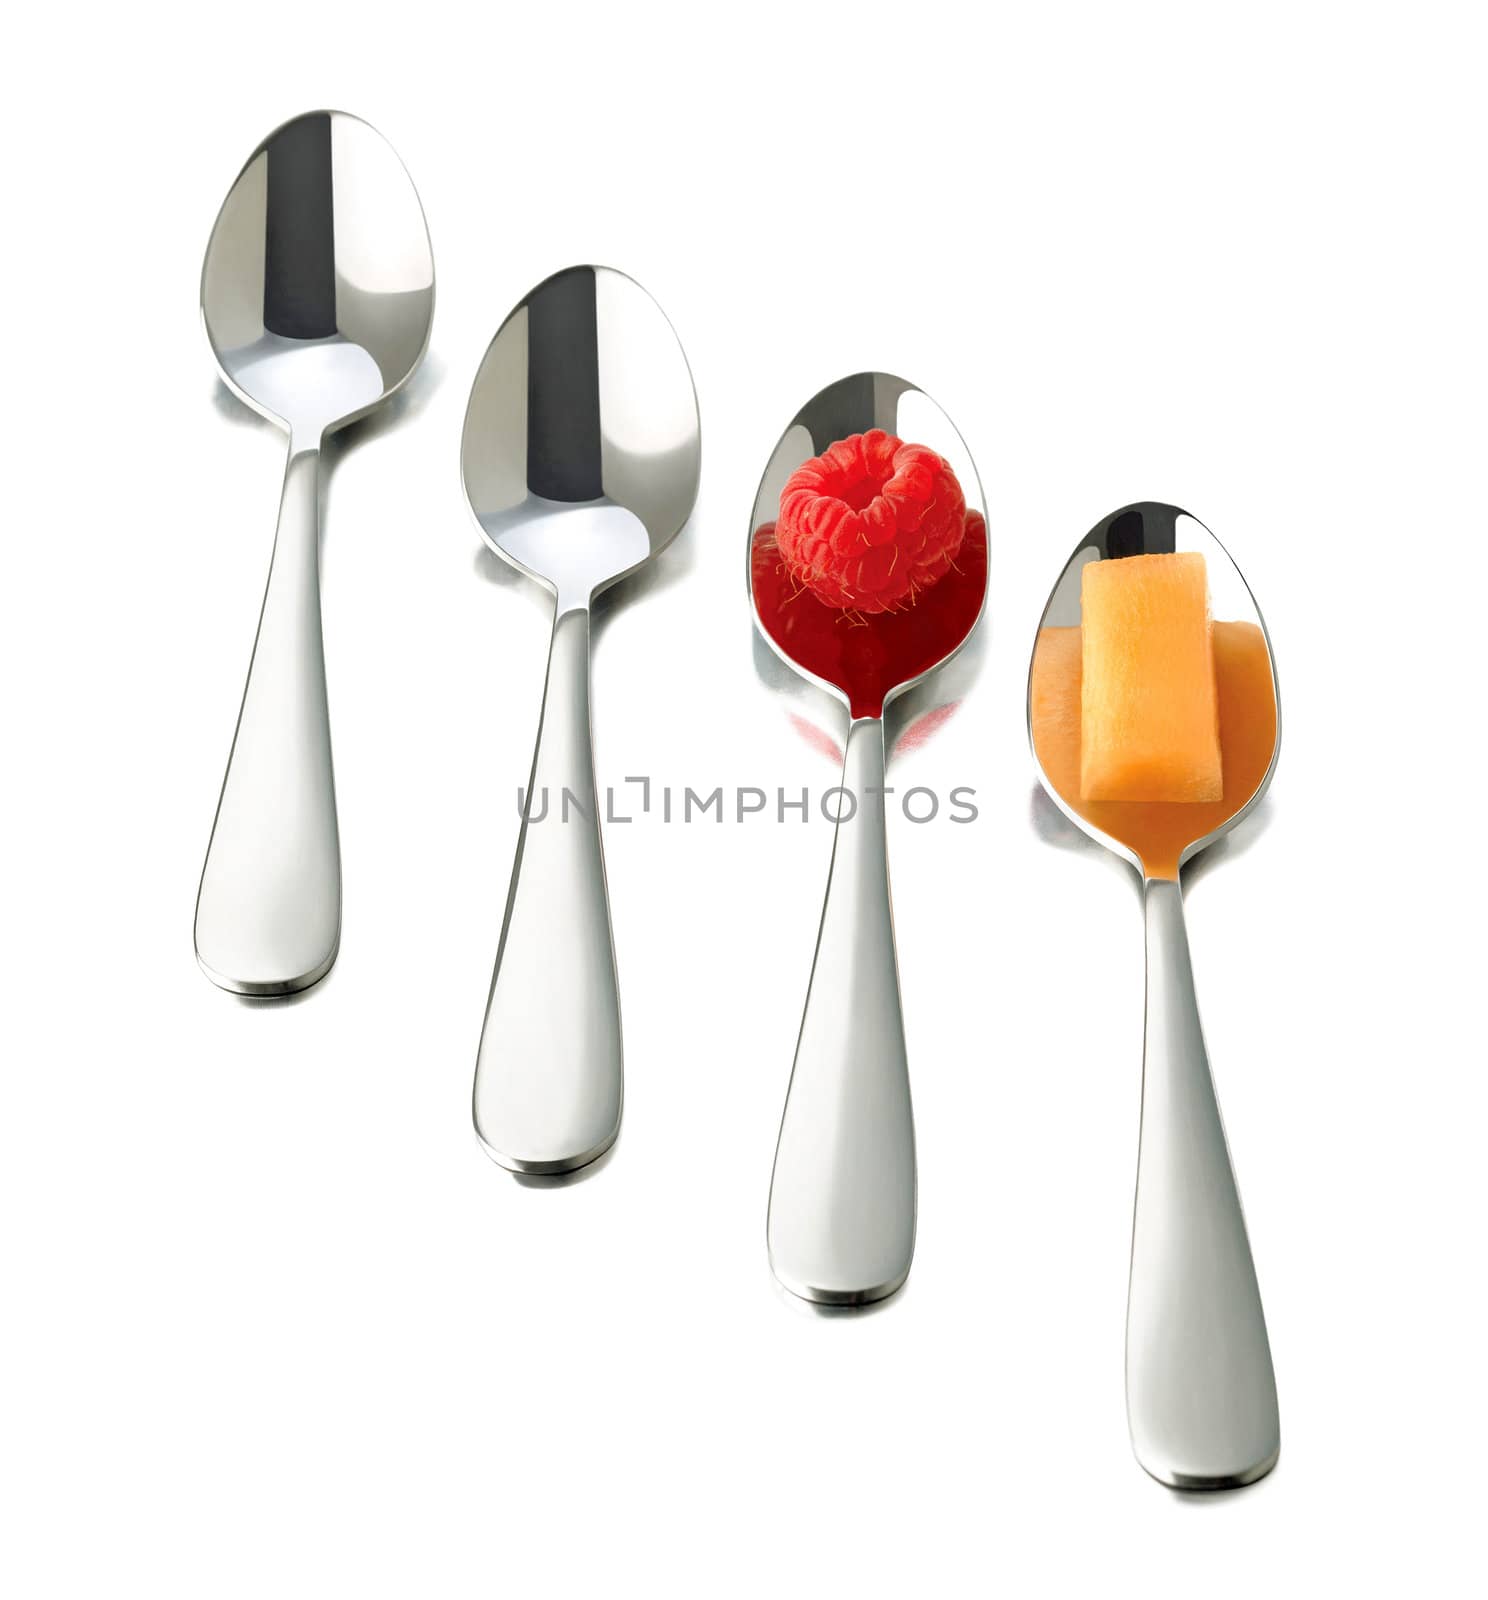 spoons by mereutaandrei